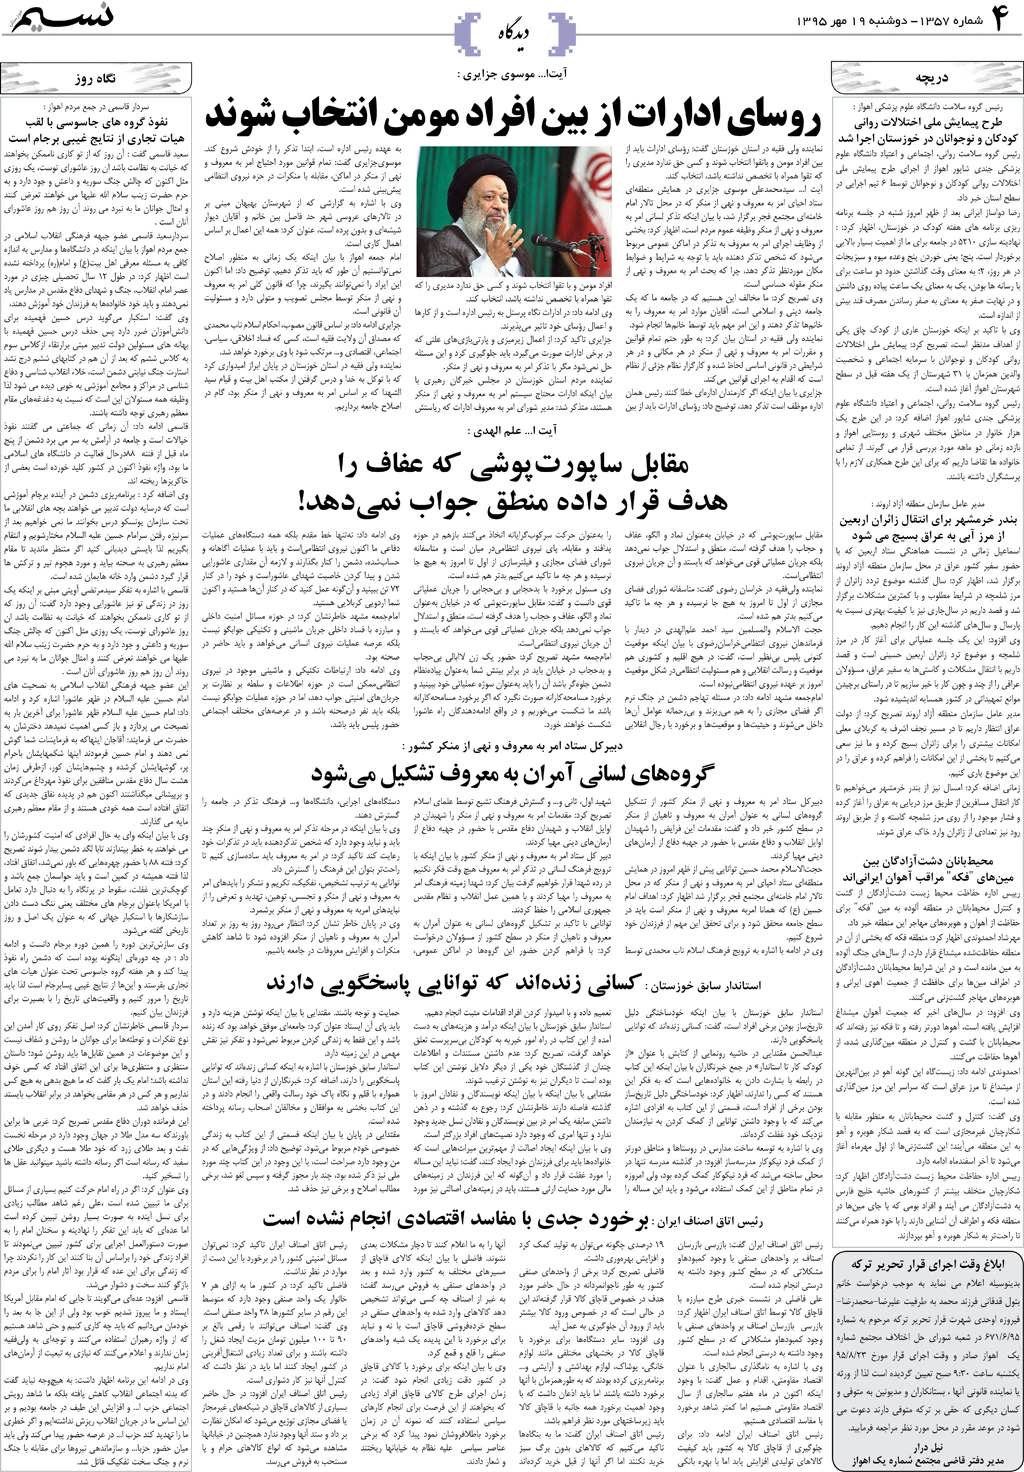 صفحه دیدگاه روزنامه نسیم شماره 1357